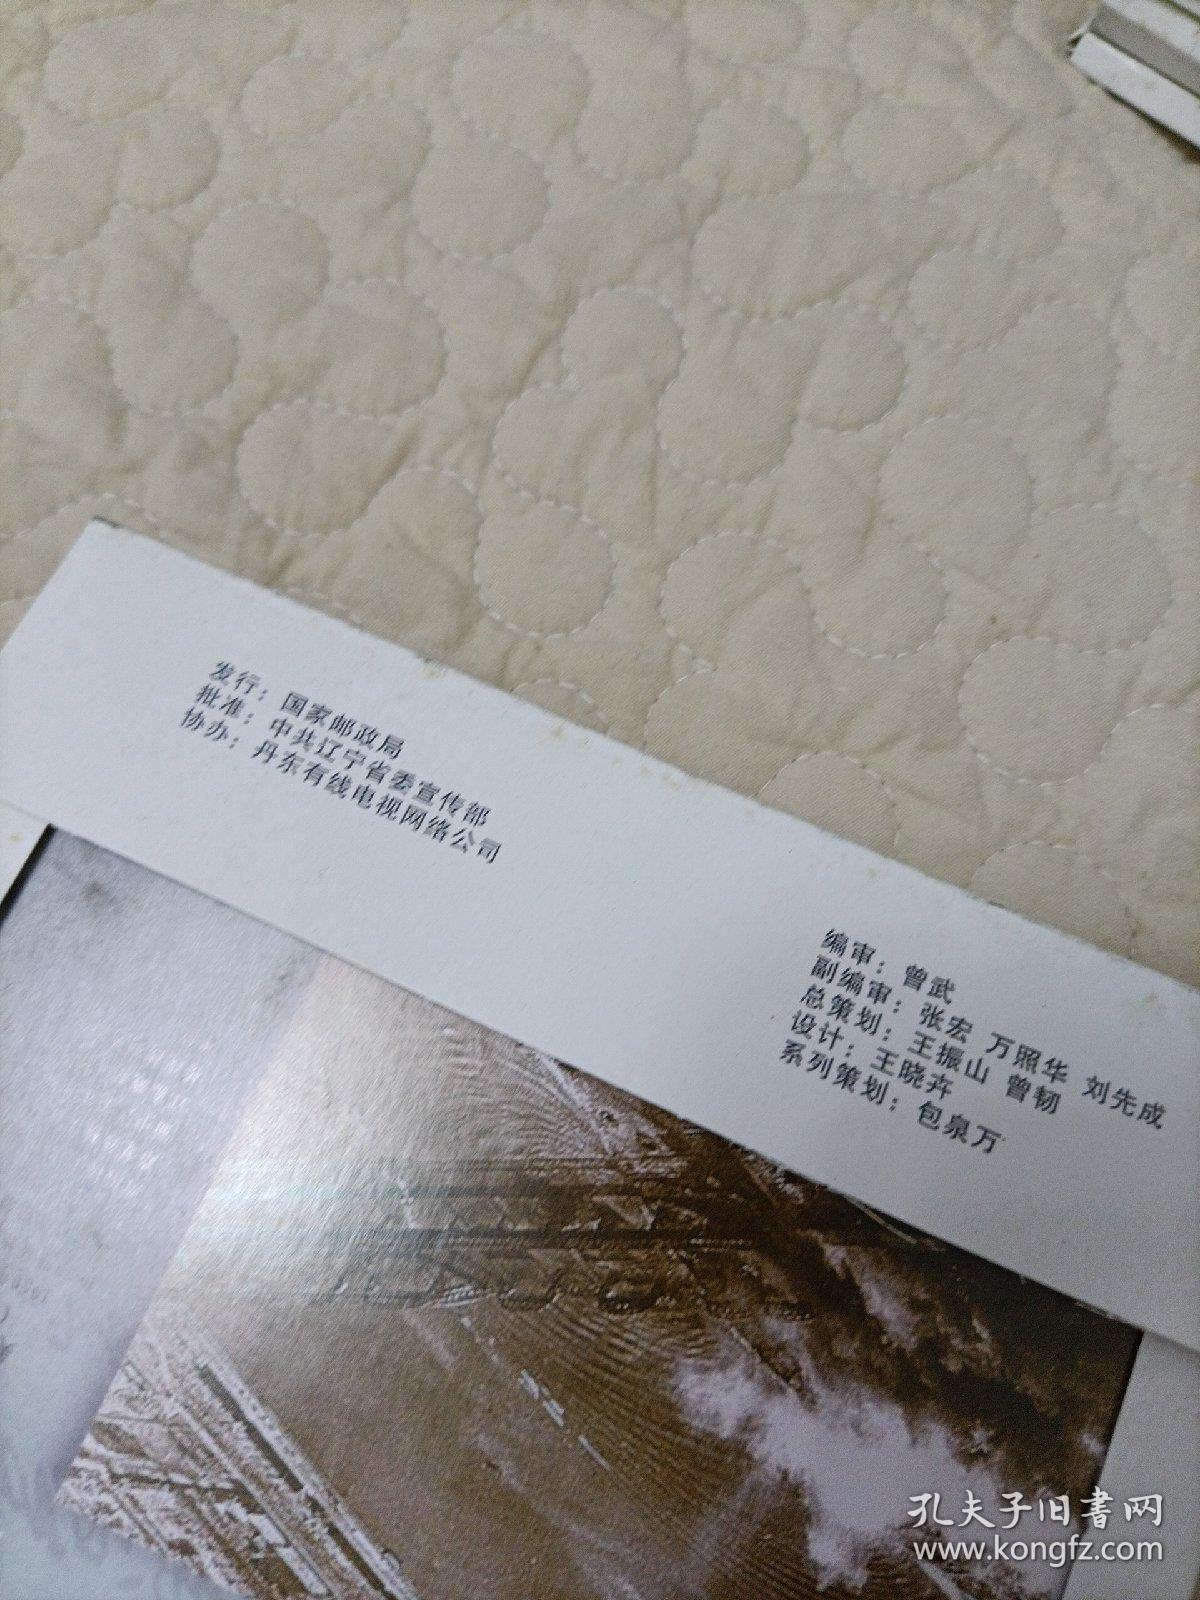 记忆丹东邮资明信片，8张全，有总策划王振山签各，正版，品佳